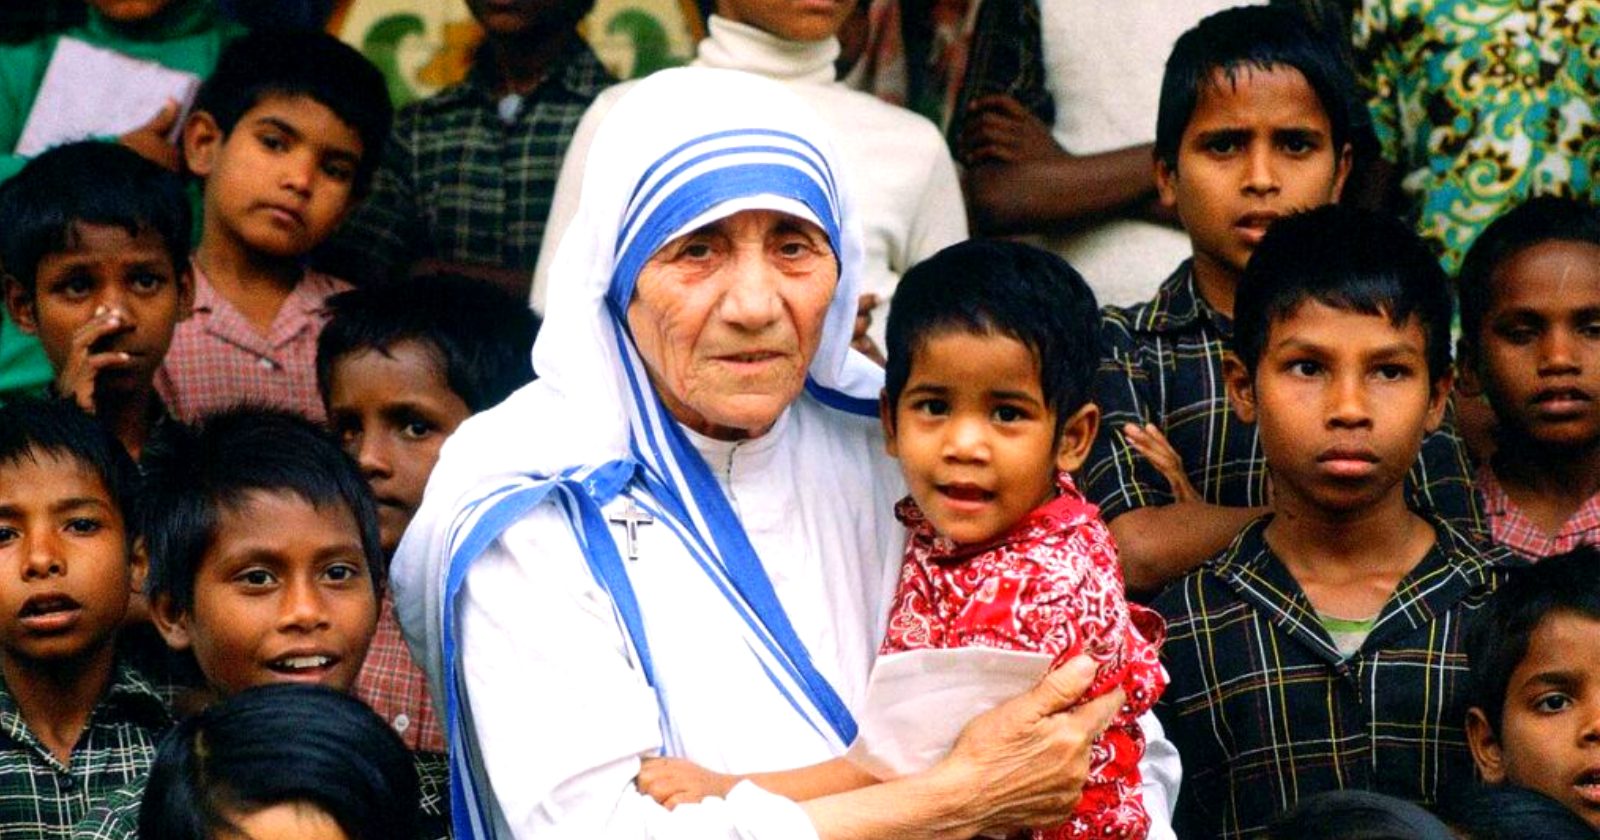 FÉ INABALÁVEL: 10 pensamentos de Madre Teresa para confiar mais em Deus